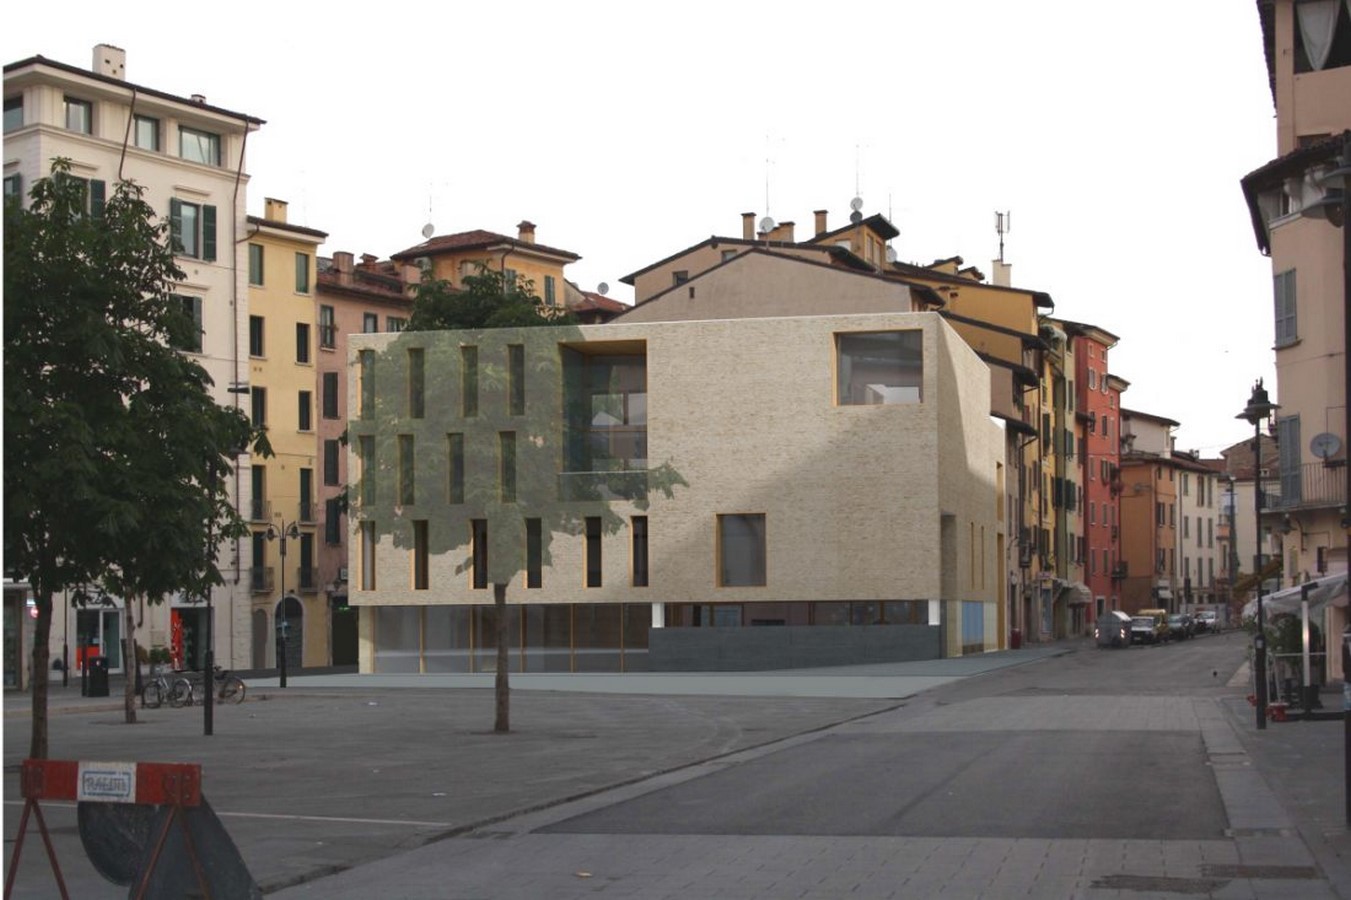 Architects in Brescia - Top 25 Architects in Brescia - Sheet12